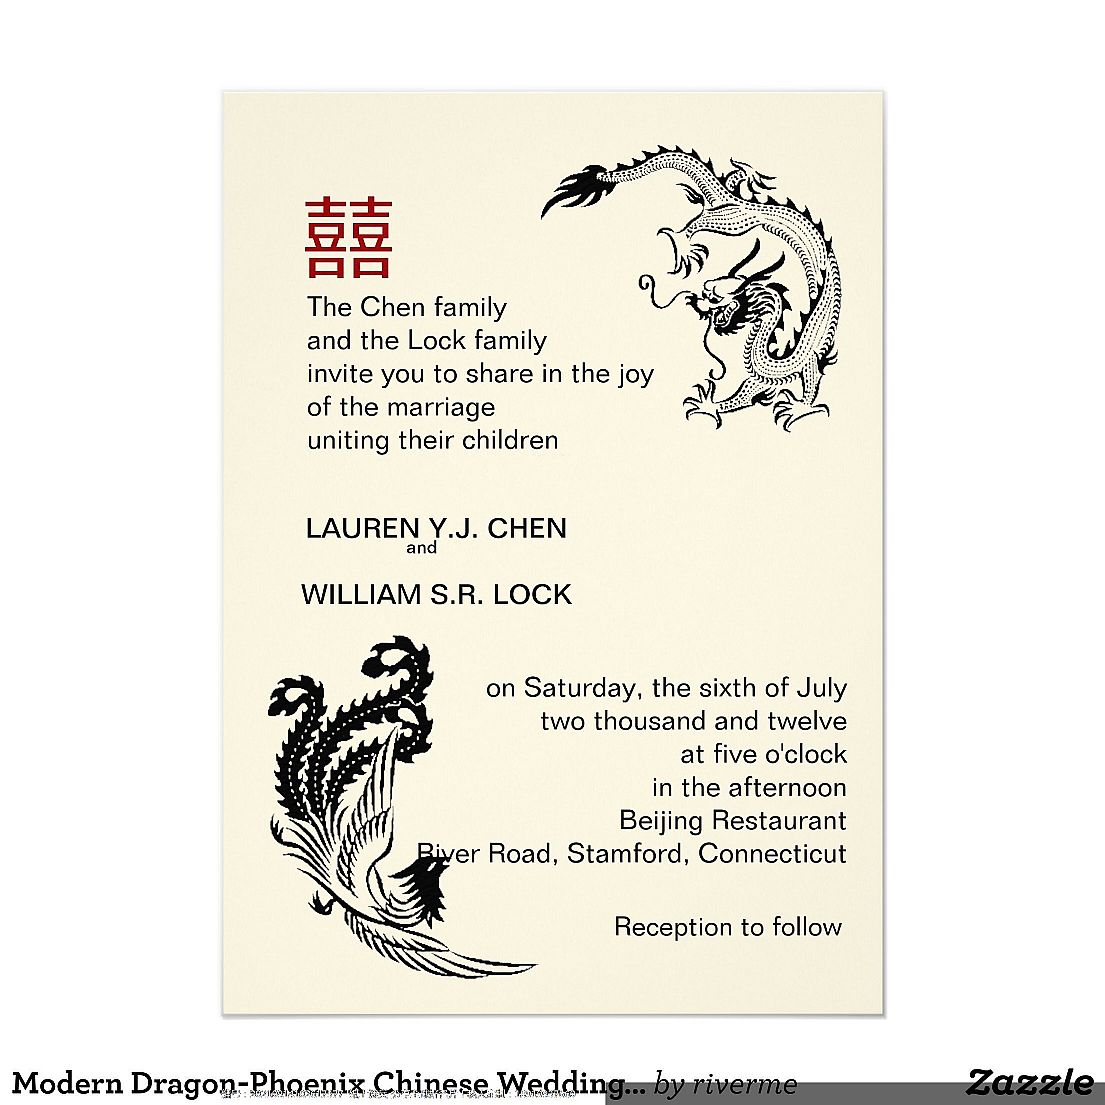 中国传统简约龙凤呈祥Letterpress凸版印刷婚礼宴会请柬贺卡设计定制